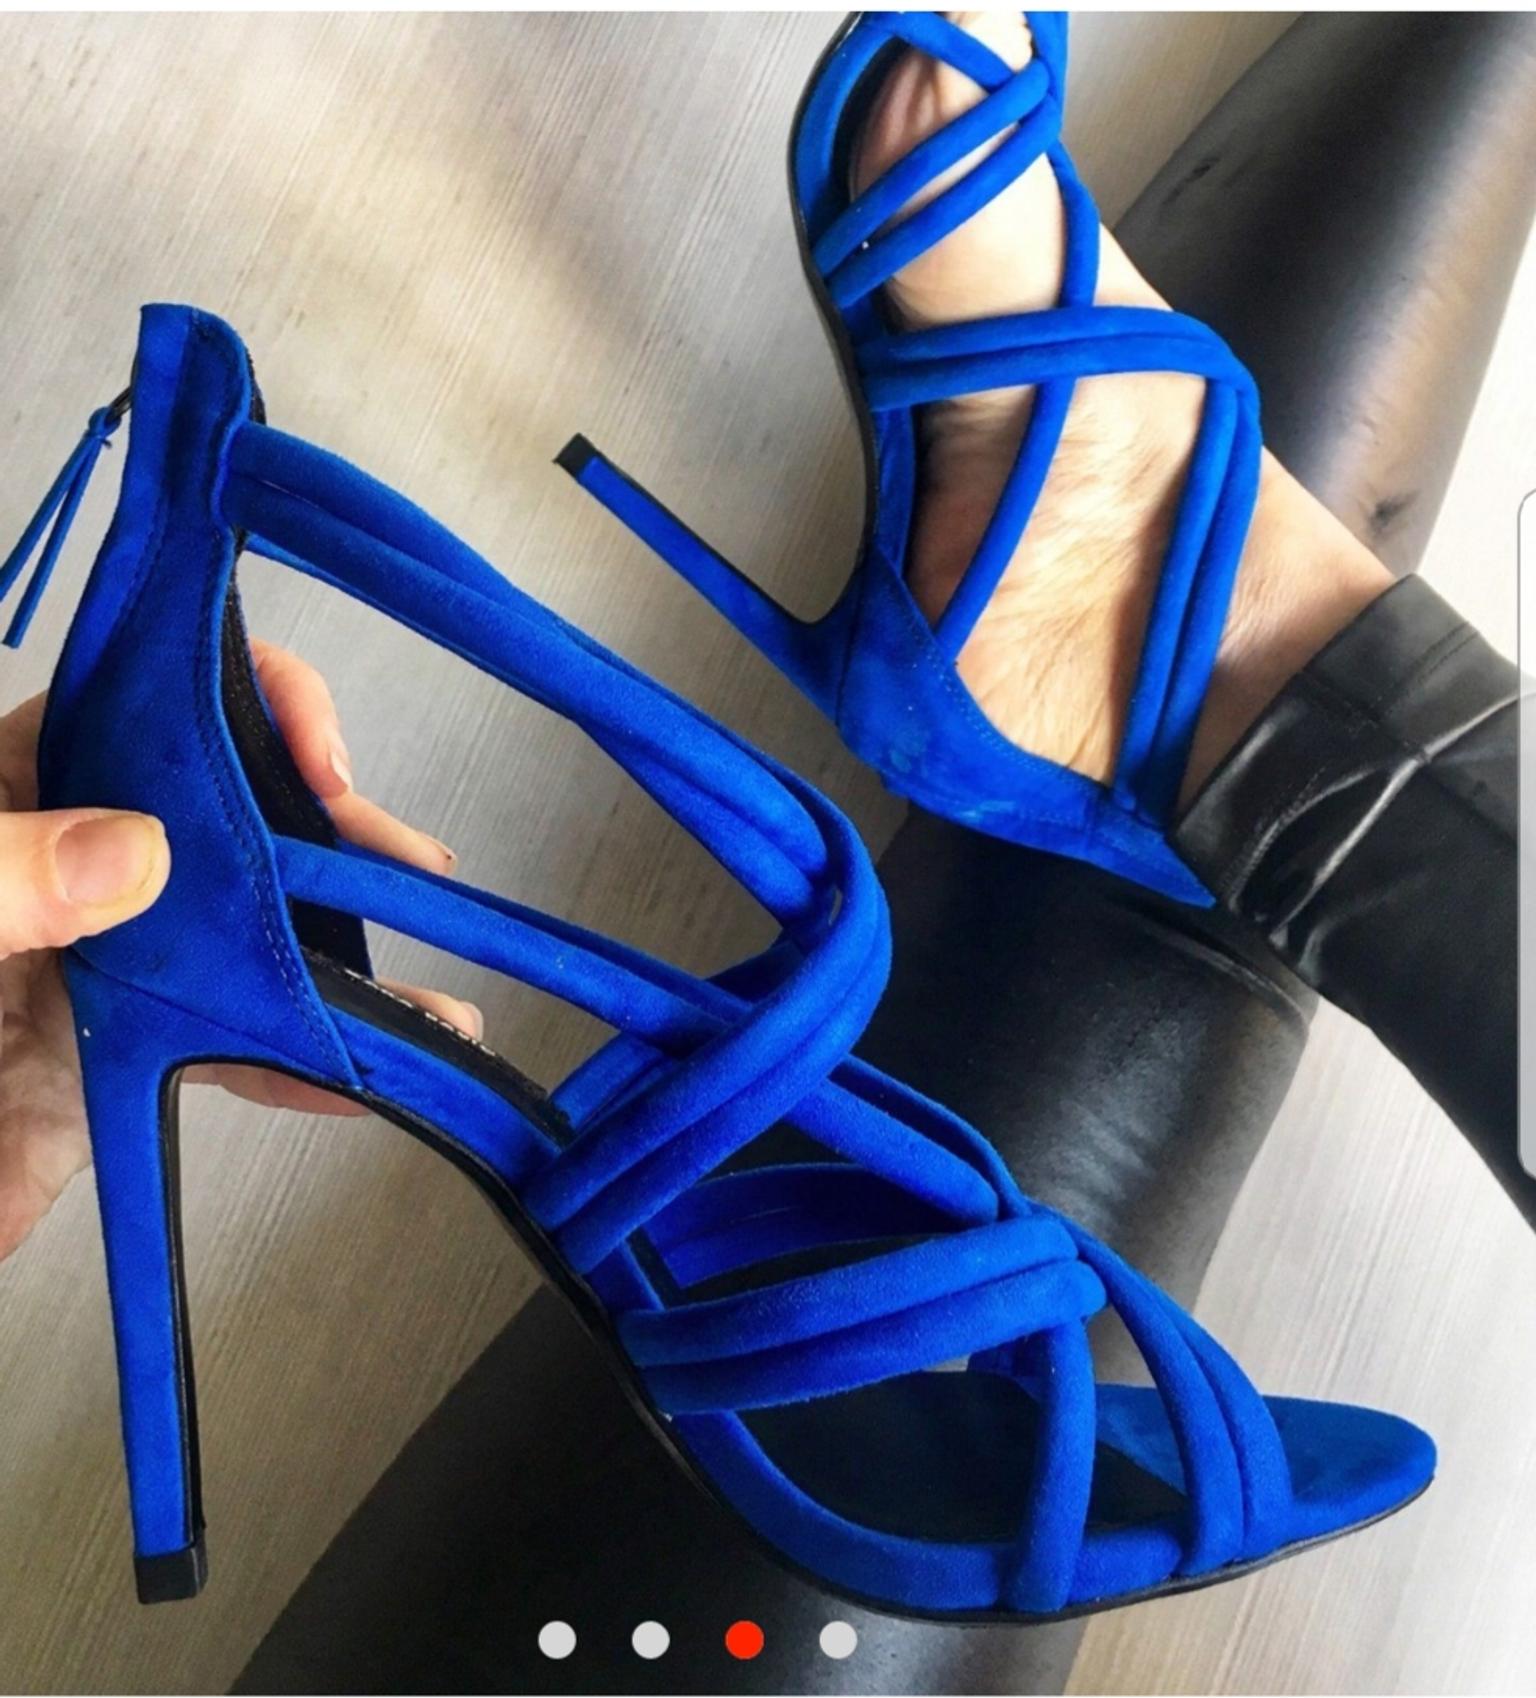 scarpe con il tacco blu